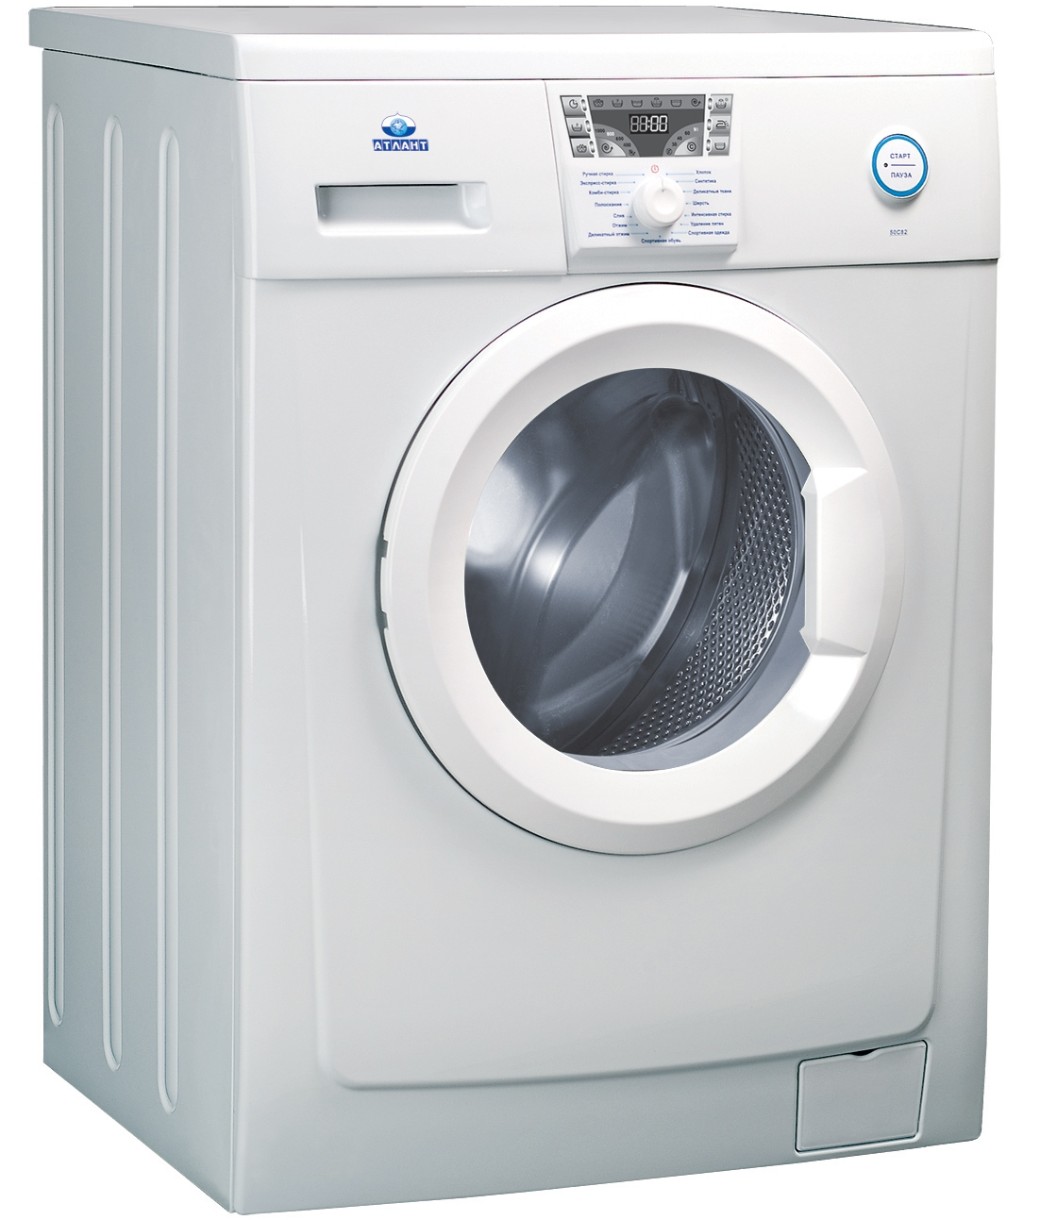 Maşina de spălat rufe Atlant 50Y102-000